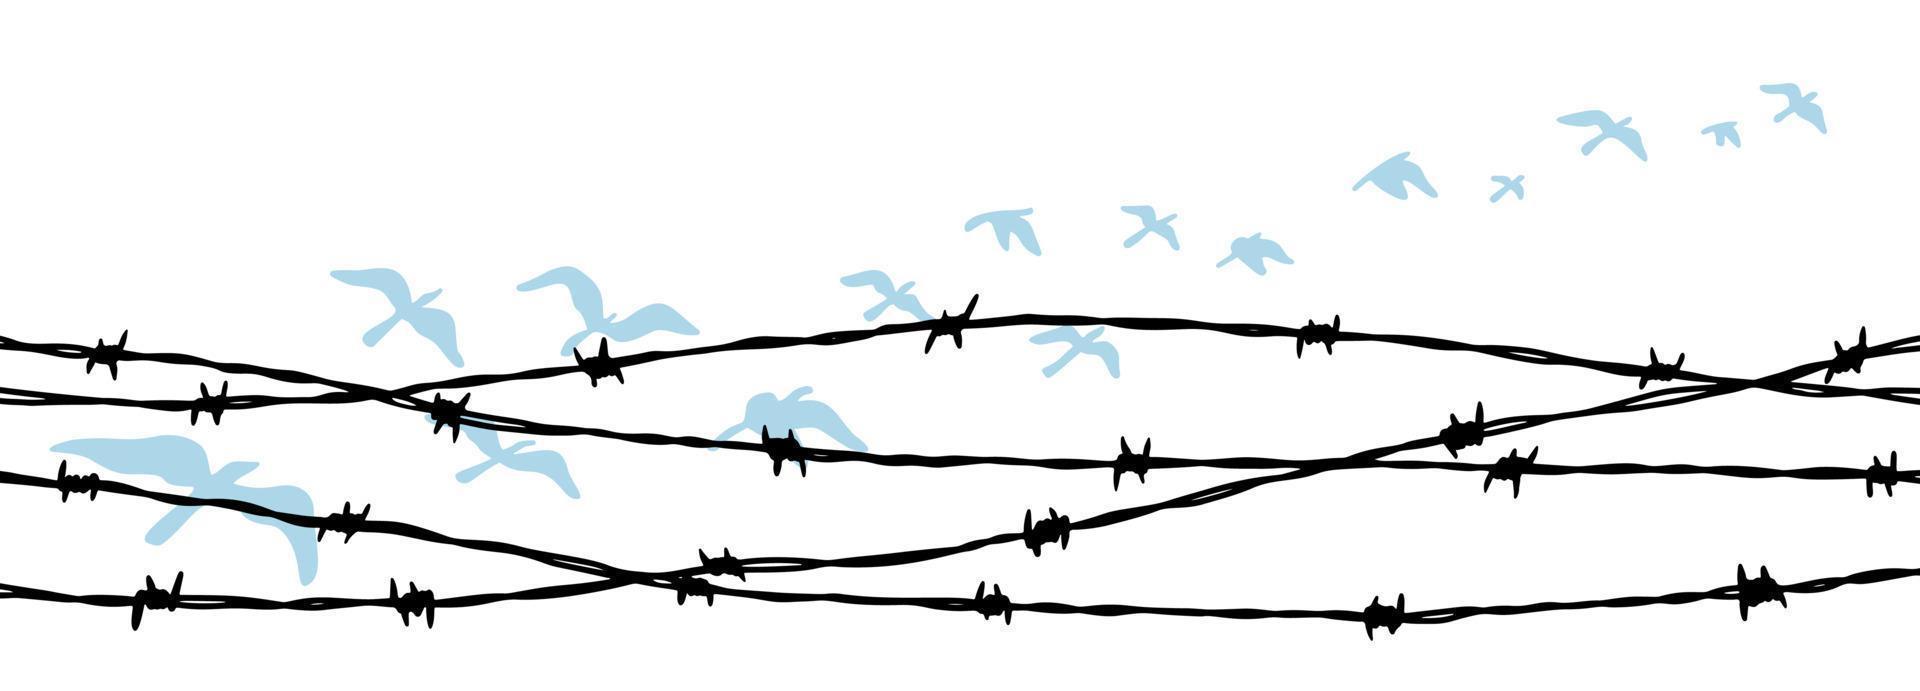 pássaros voando atrás da cerca de arame farpado. conceito de liberdade. ilustração vetorial desenhada à mão vetor